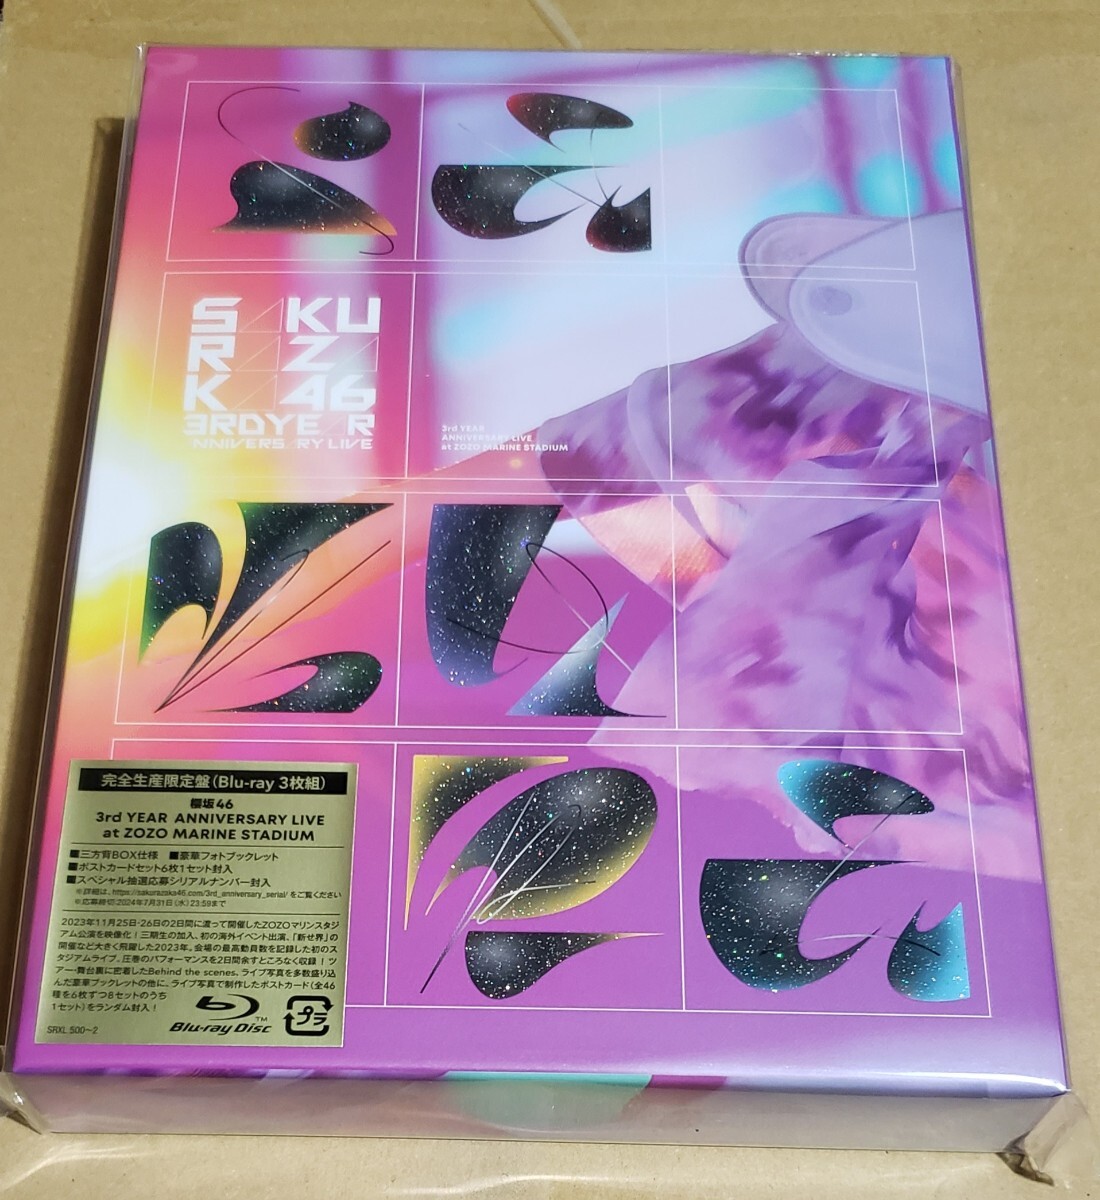 櫻坂46 3rd YEAR ANNIVERSARY LIVE at ZOZO MARINE STADIUM 完全生産限定盤 Blu-ray 3枚組 新品未開封_画像1